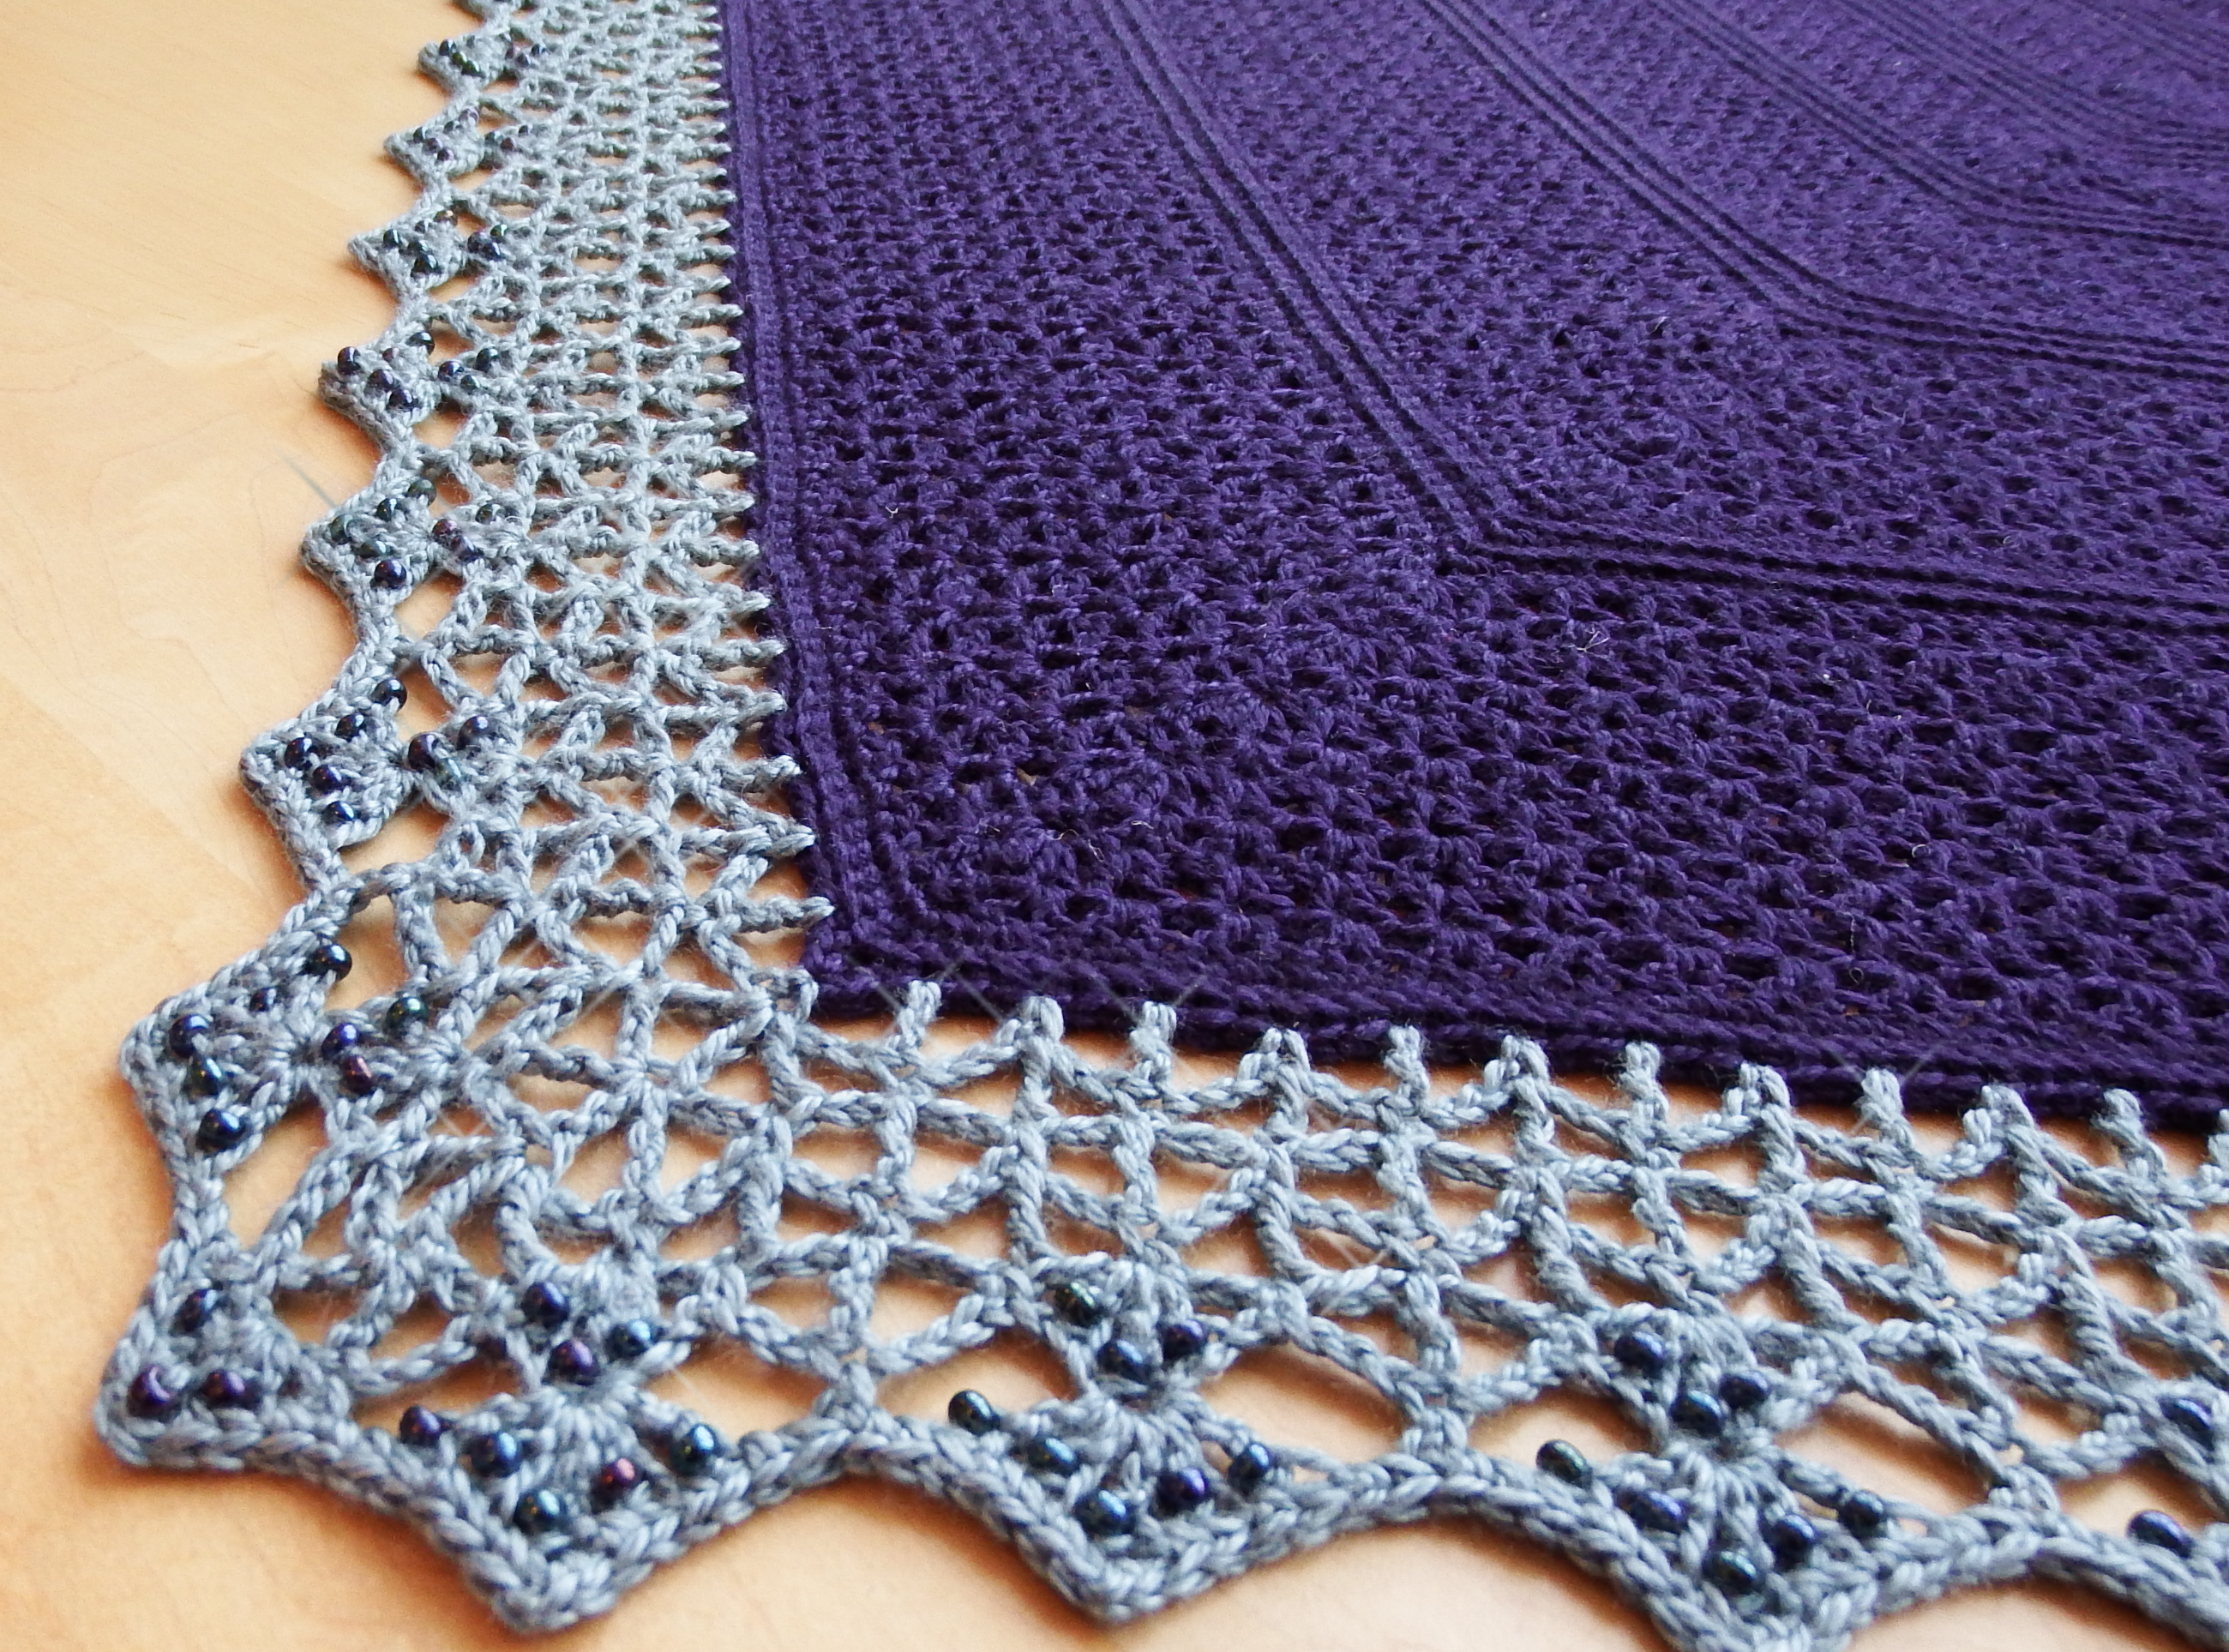 Crochet Lace Shawl Pattern Atlantic Lace Shawl Make My Day Creative